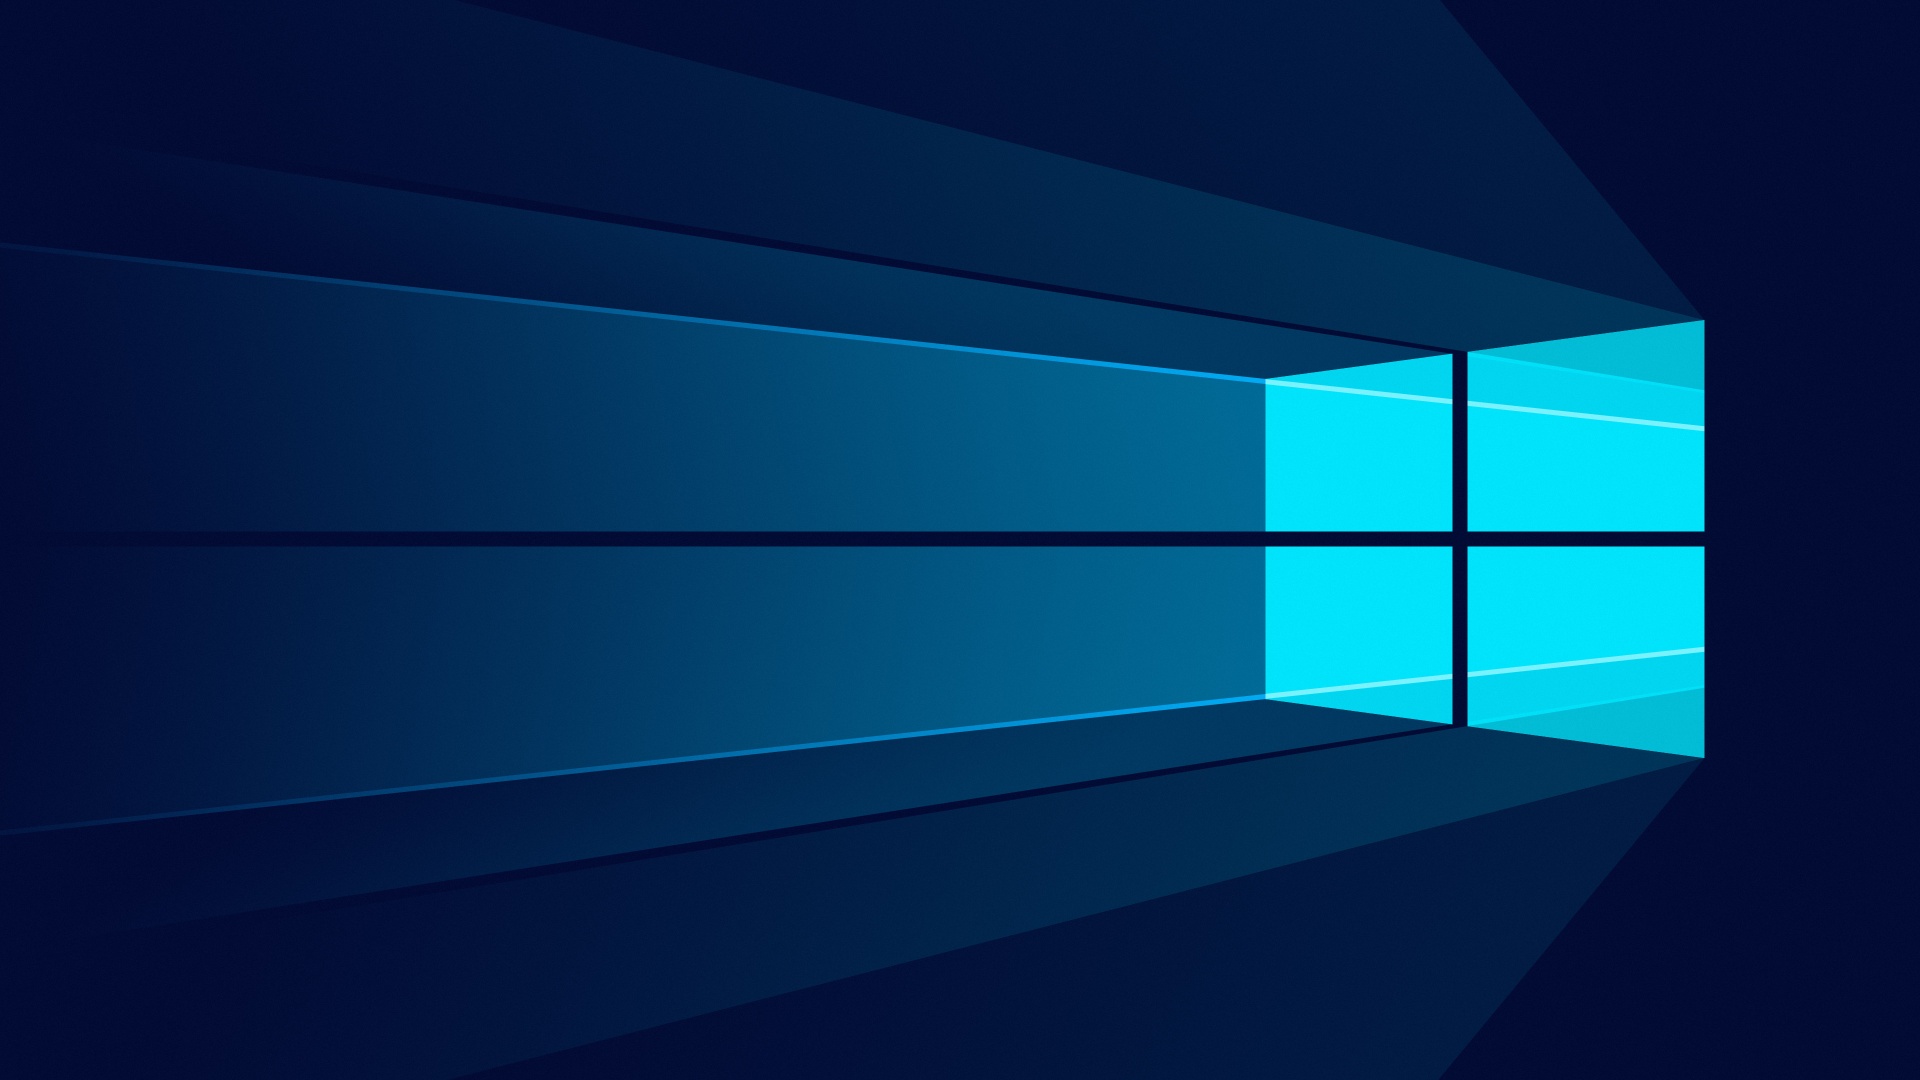 Hãy khám phá hình nền Windows 10 đẹp nhất trong chất lượng 4K. Tận hưởng những hình ảnh rực rỡ và sắc nét nhất trên máy tính của bạn với hình nền siêu nét này. Hàng ngàn hình nền đẹp đang chờ đợi bạn, cùng khám phá ngay!